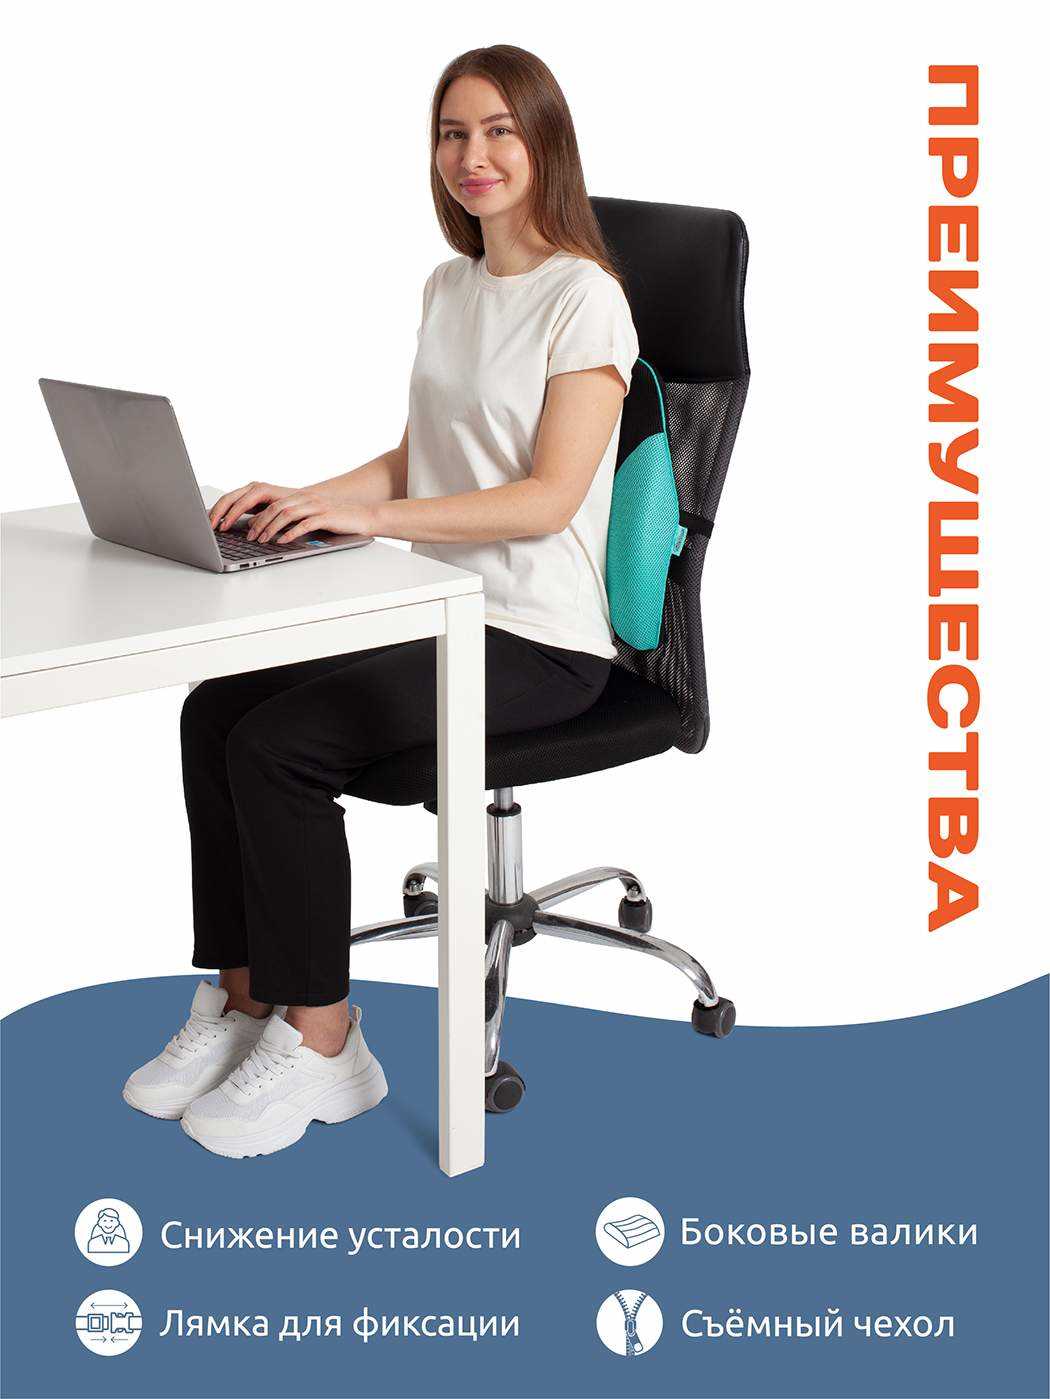 Важность правильной поддержки спины на офисном кресле — советы и рекомендации для соблюдения комфорта и здоровья